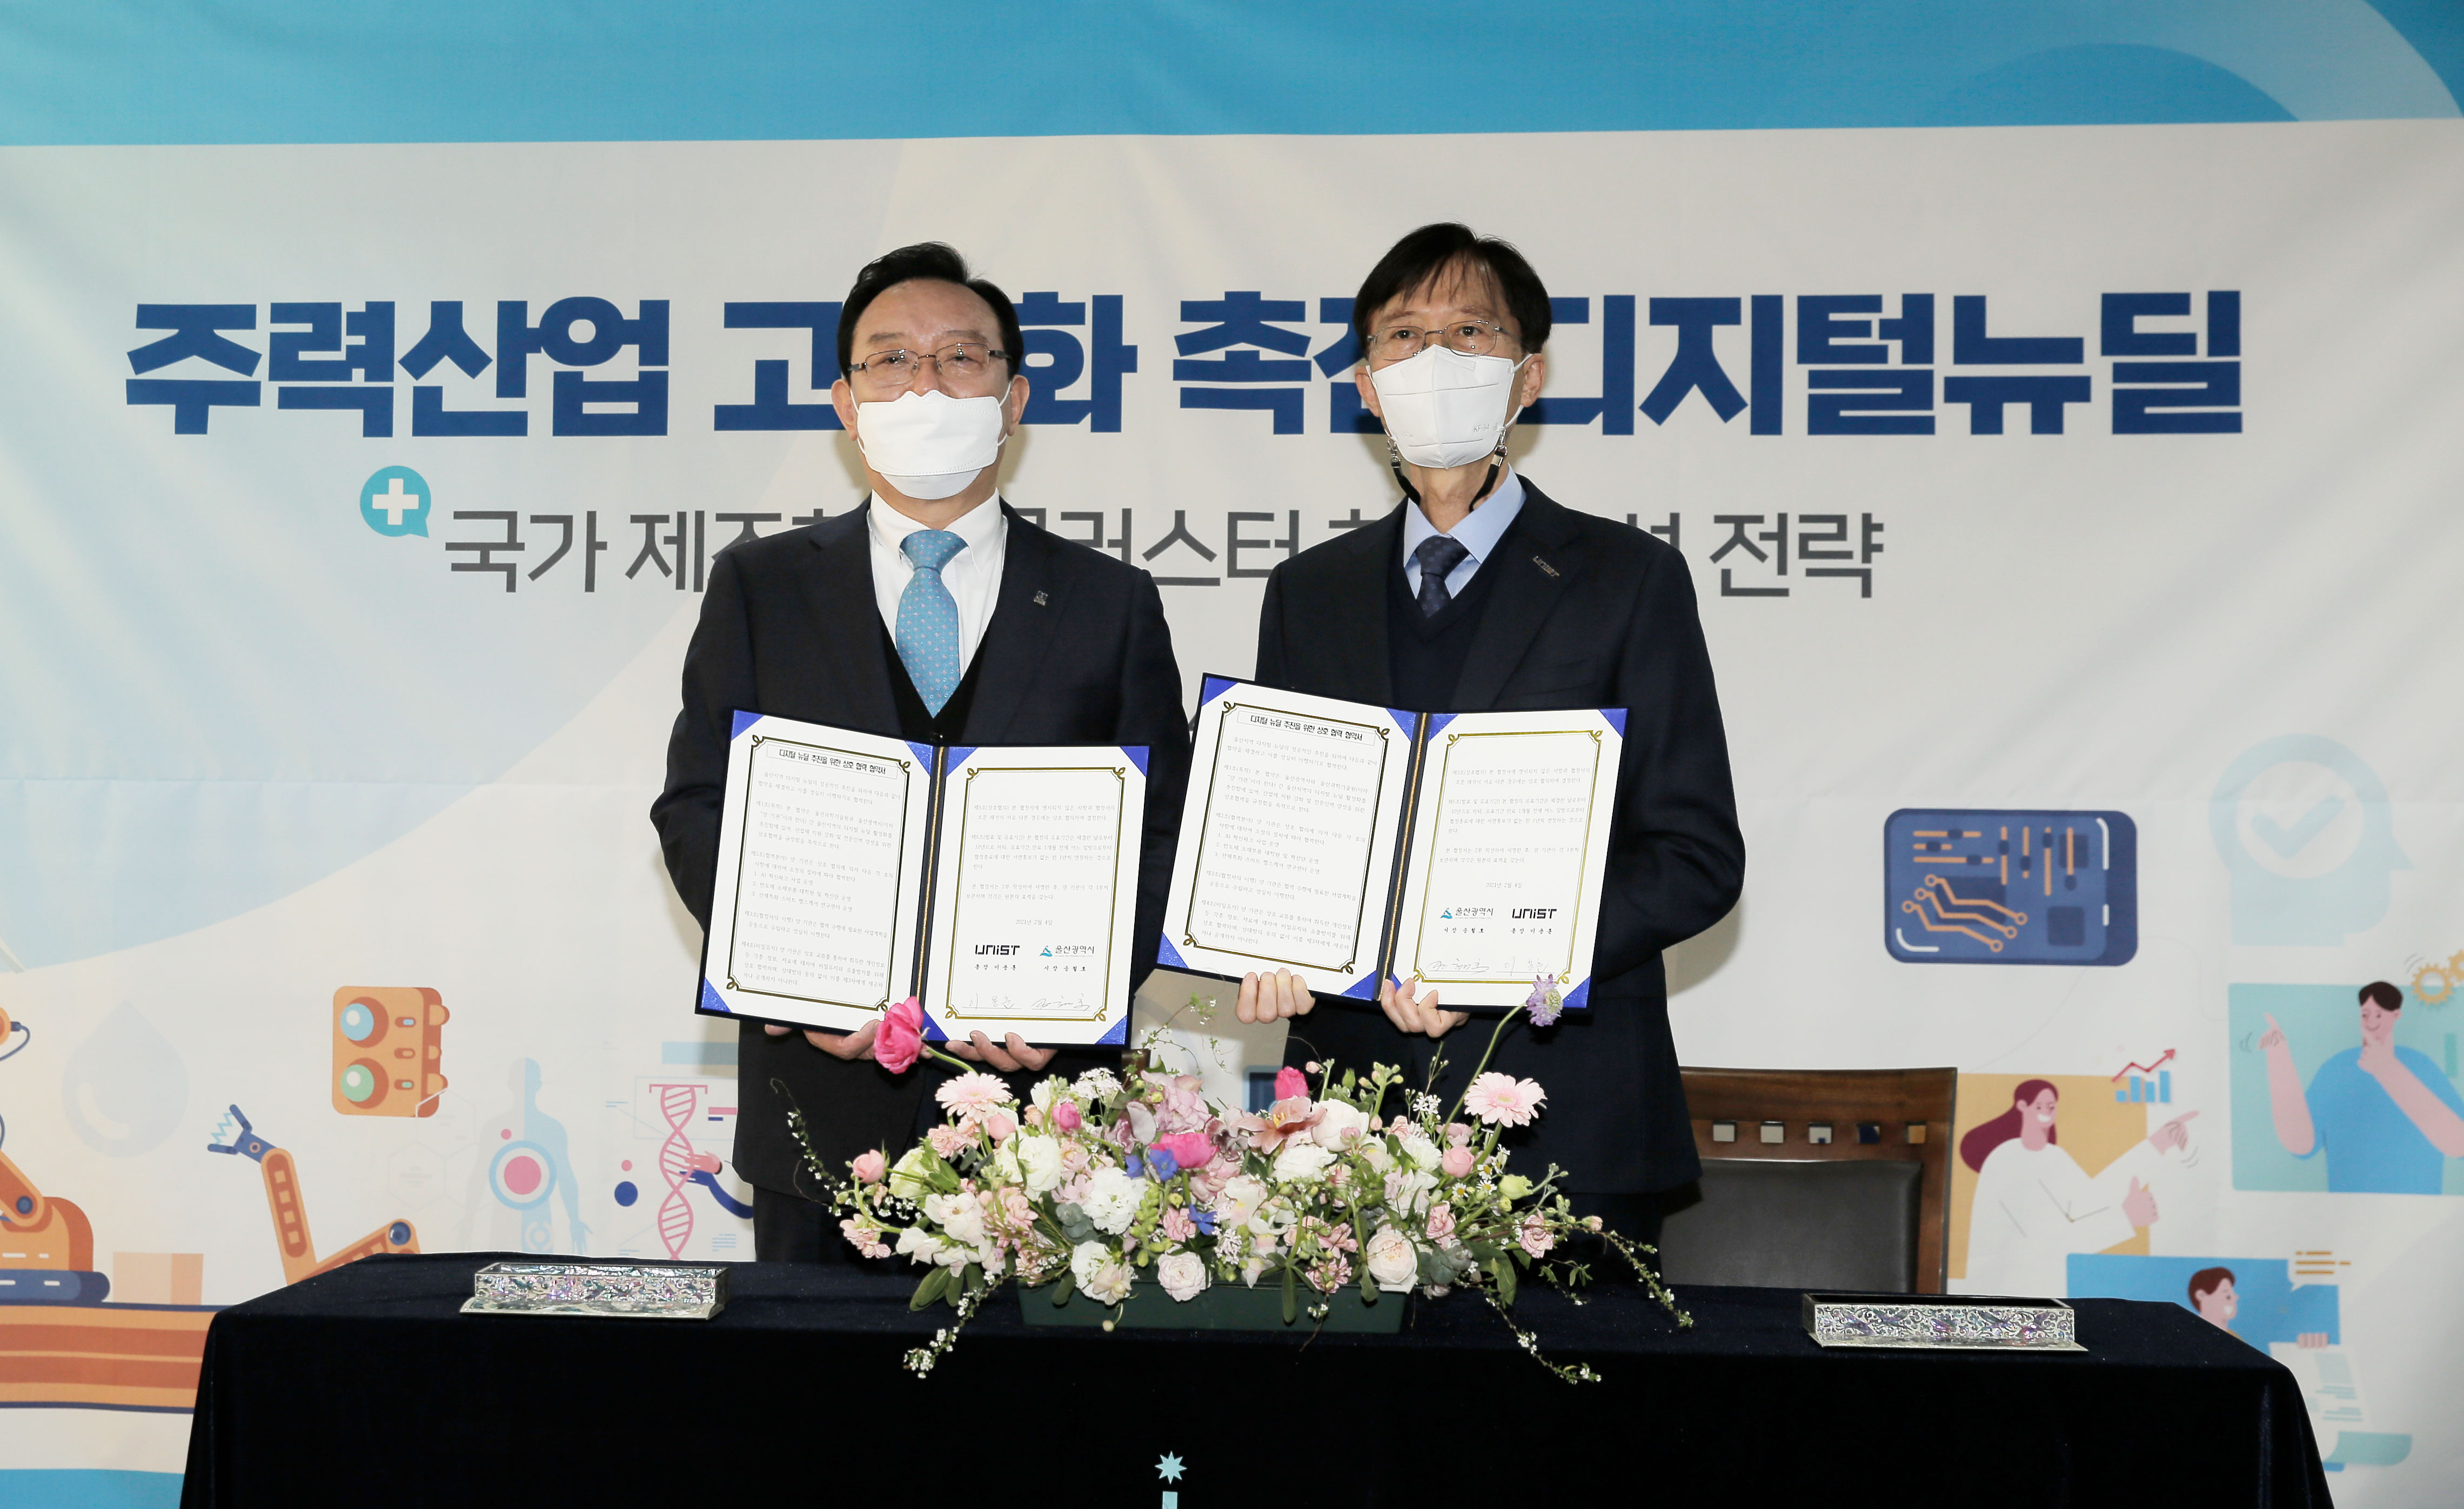 이용훈 총장(오른쪽)과 송철호 시장(왼쪽)이 협약에 서명했다. | 사진: 김경채